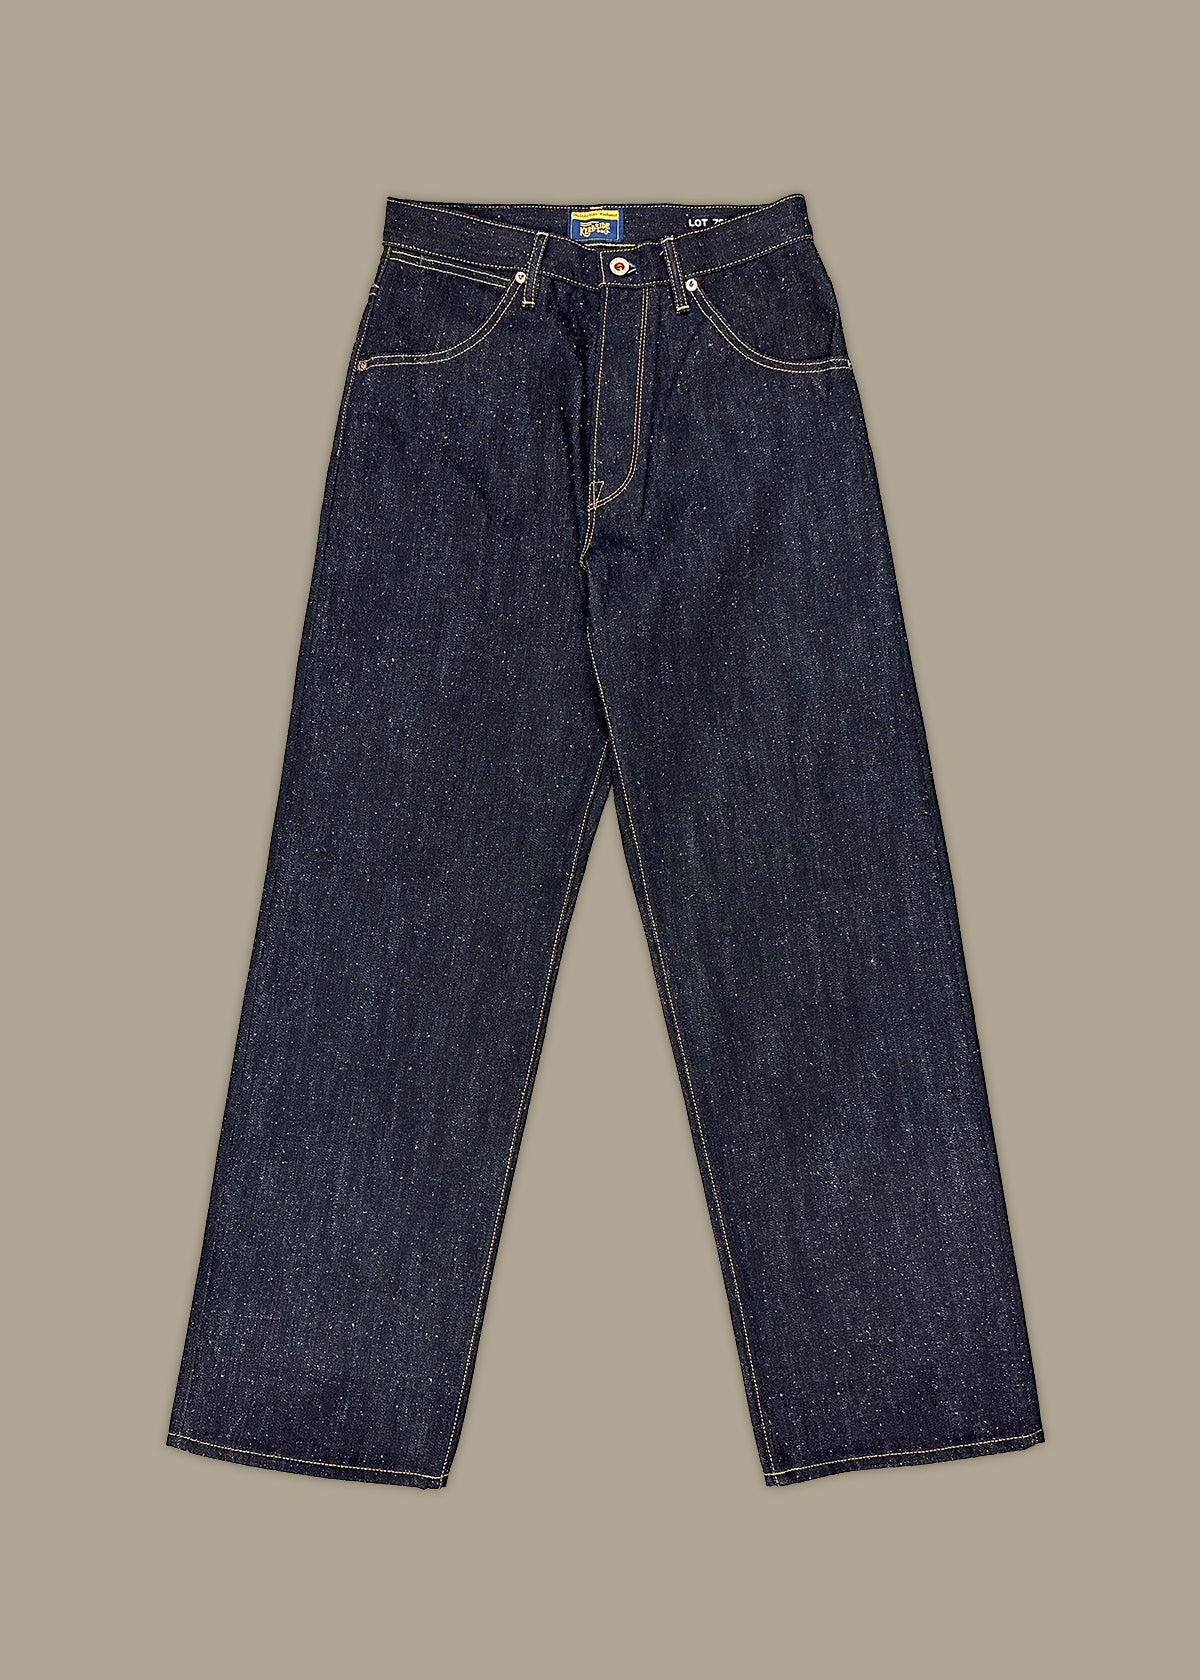 LOT 75E Jeans - Indigo Nep